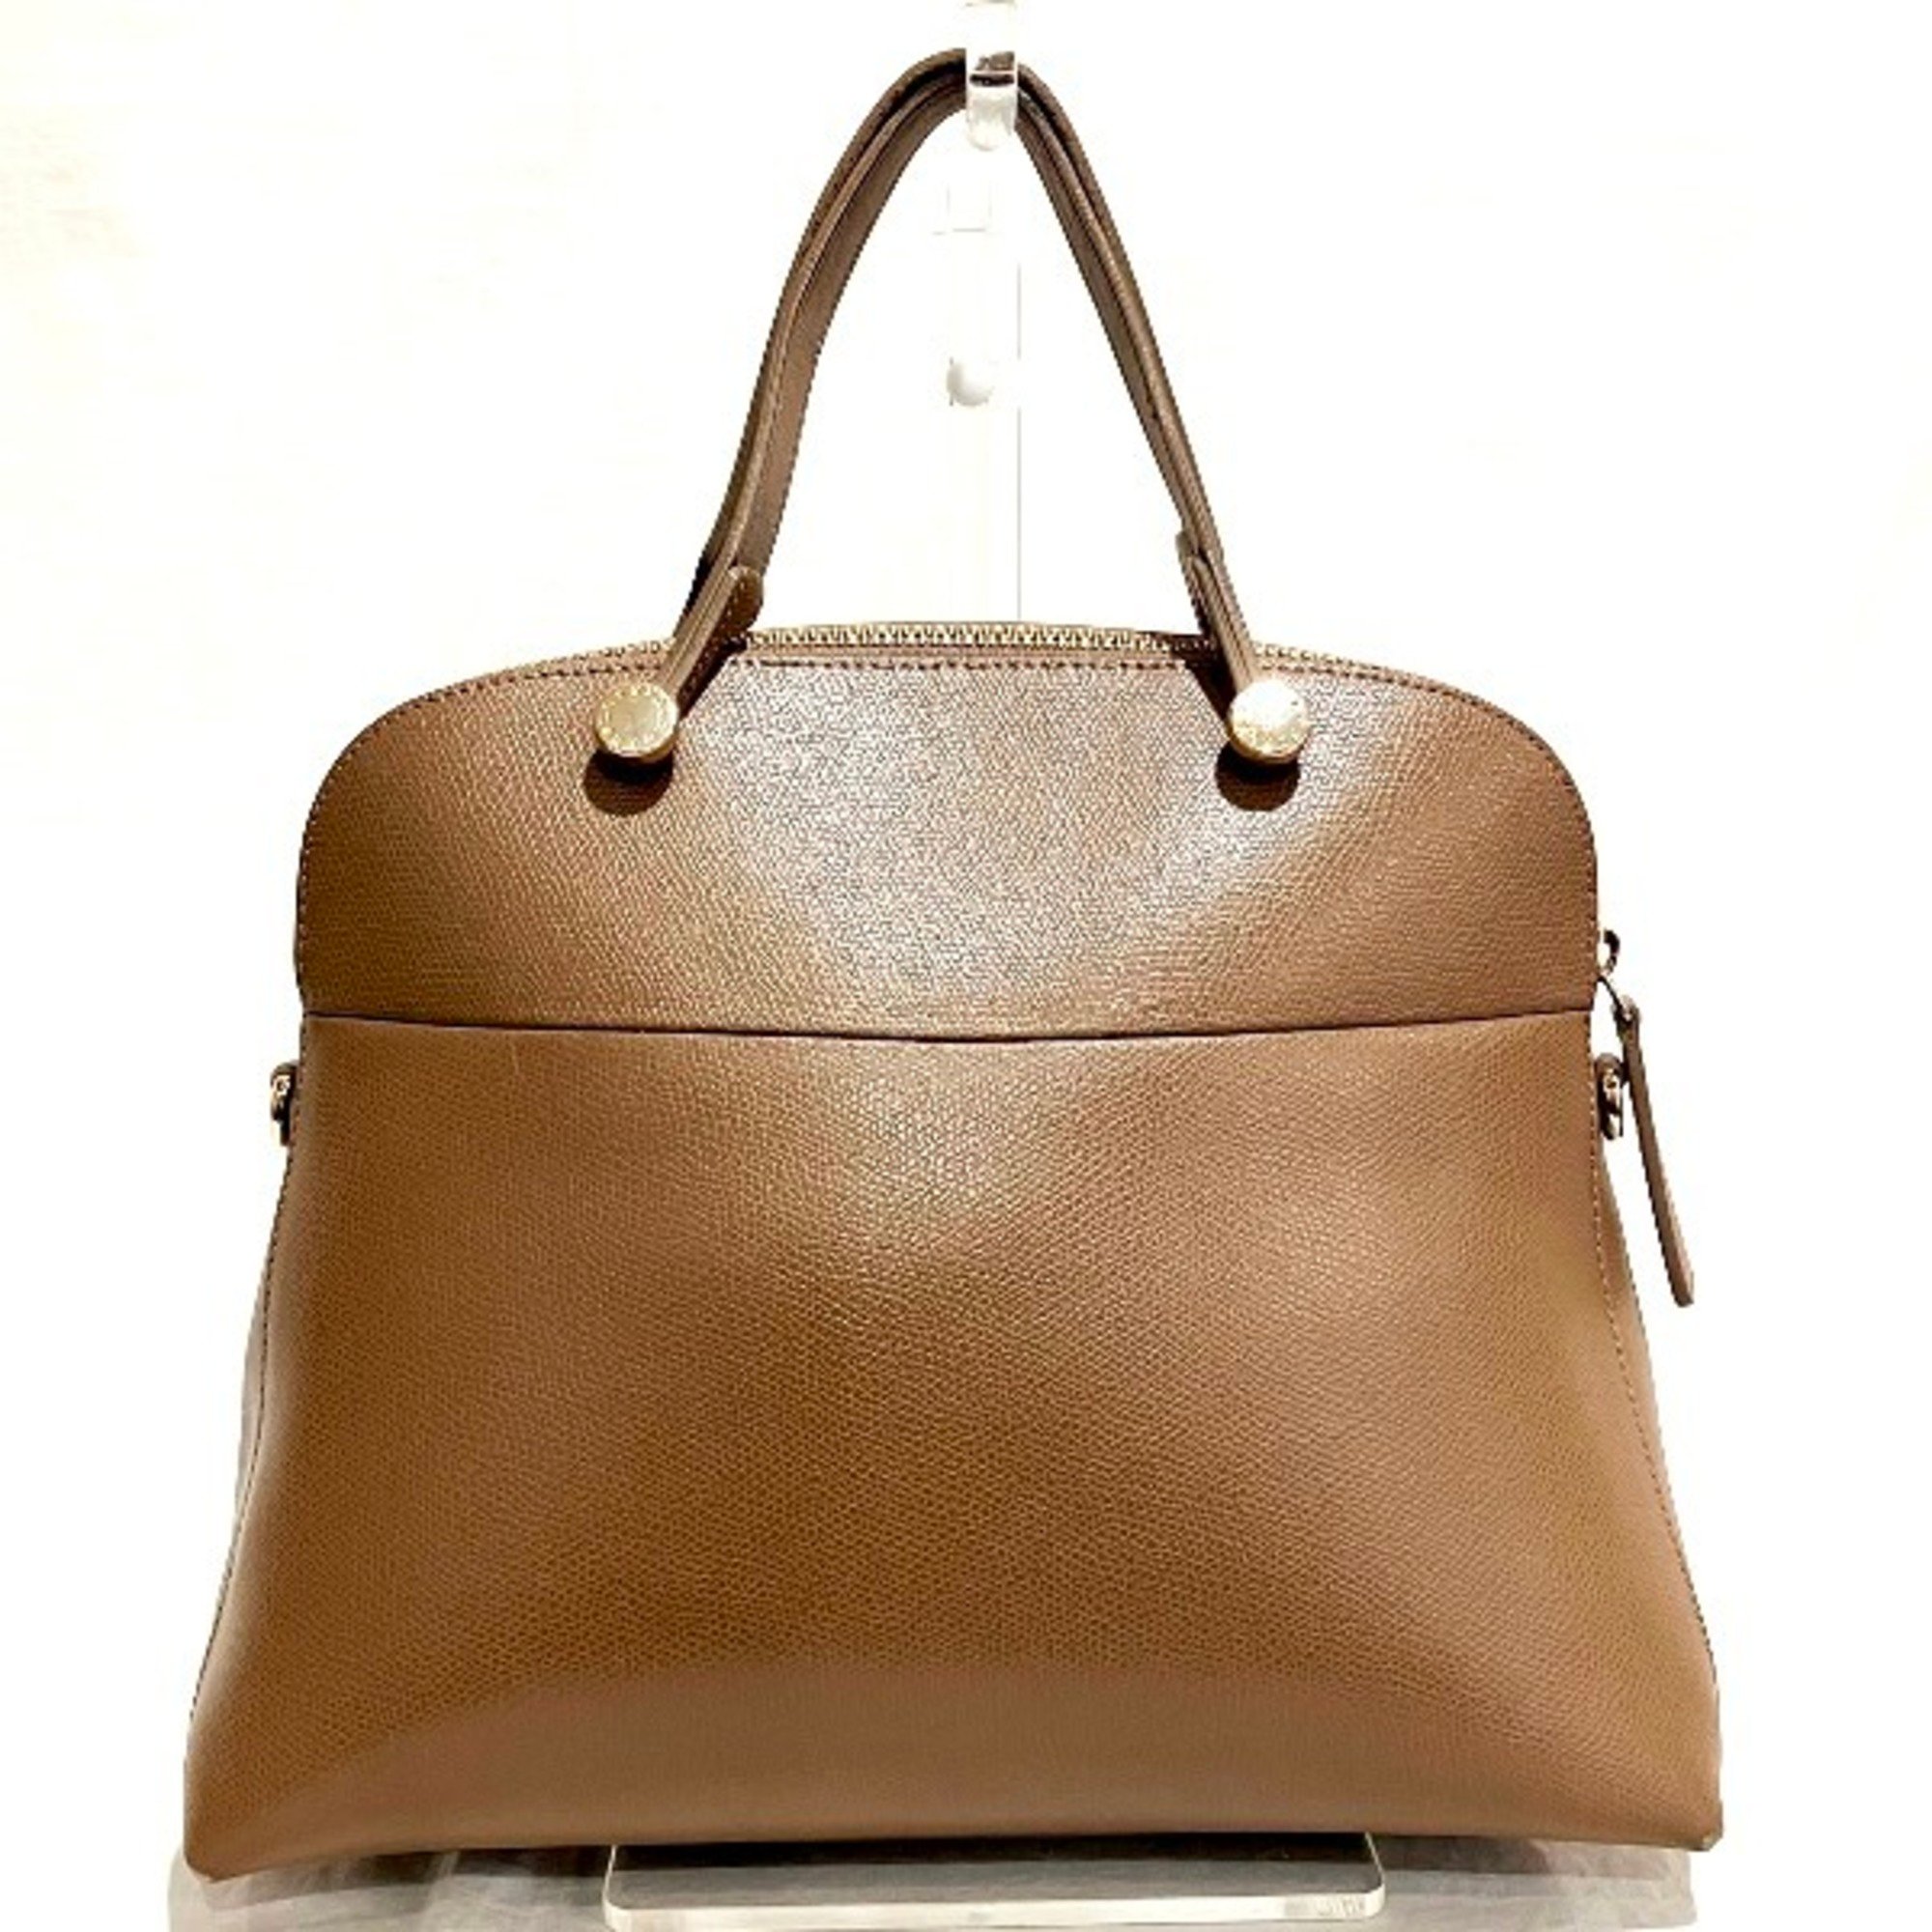 Furla FURLA brown leather bag handbag ladies